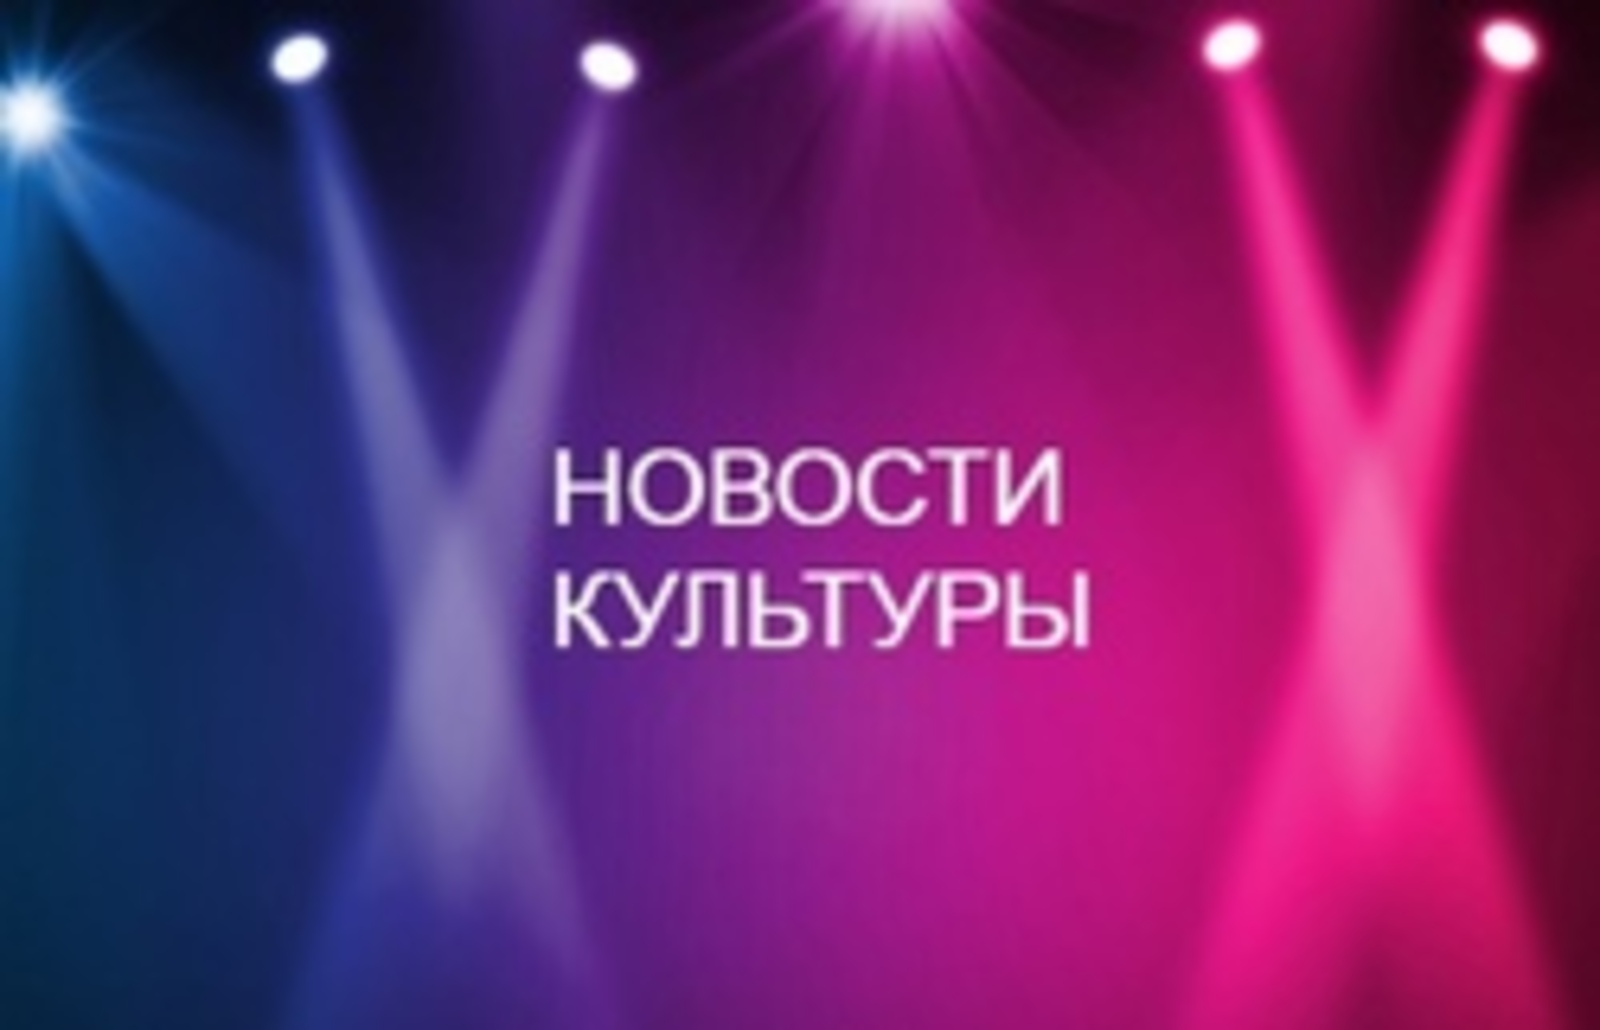 Программа «Сәңгелдәк» вышла в финал Российской национальной телевизионной премии «ТЭФИ-KIDS»